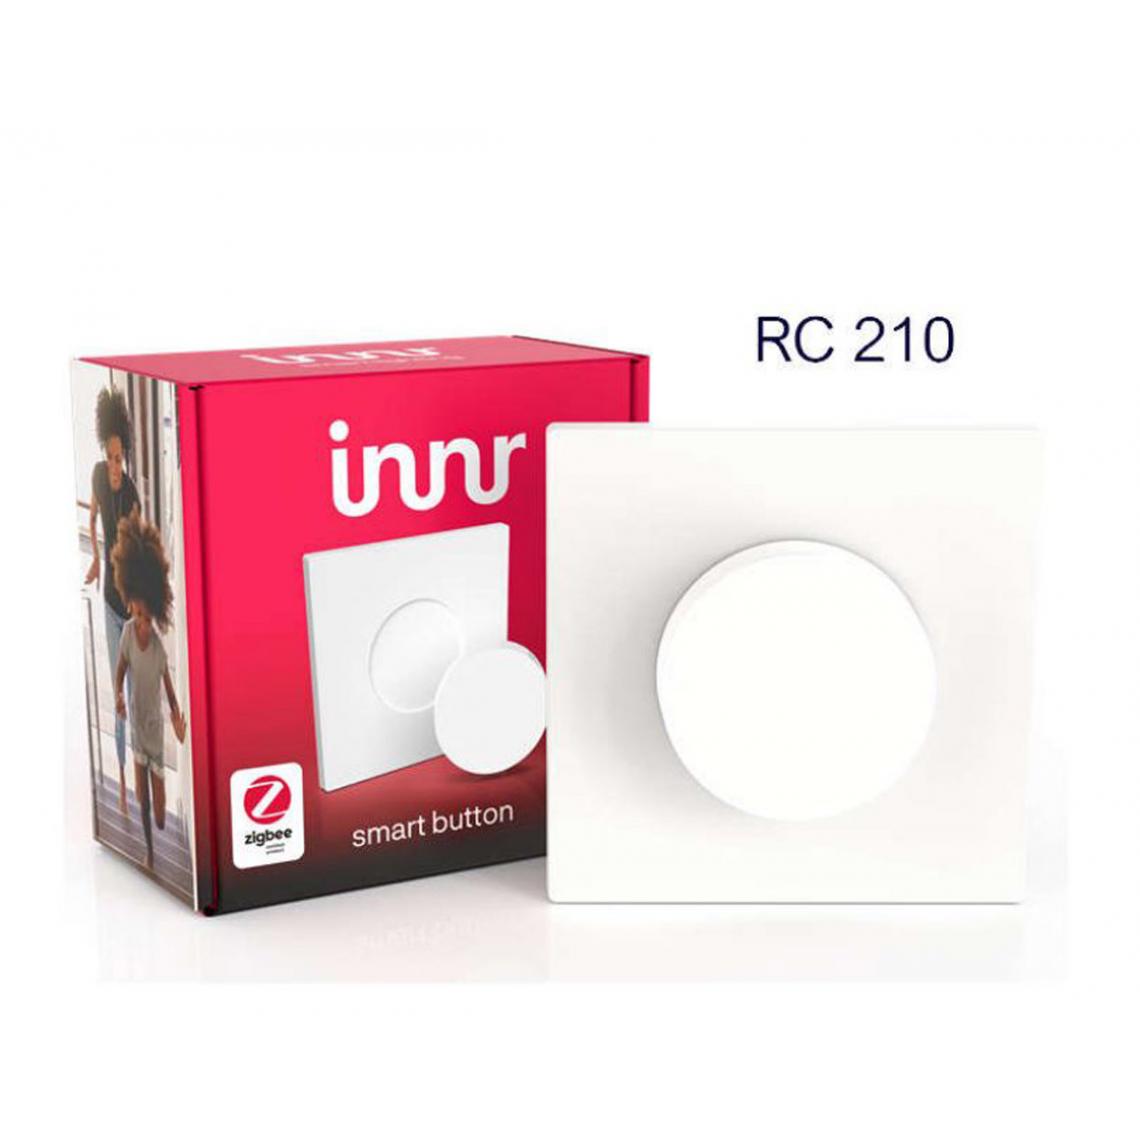 Innr - Smart Button RC 210 - Interrupteur connecté